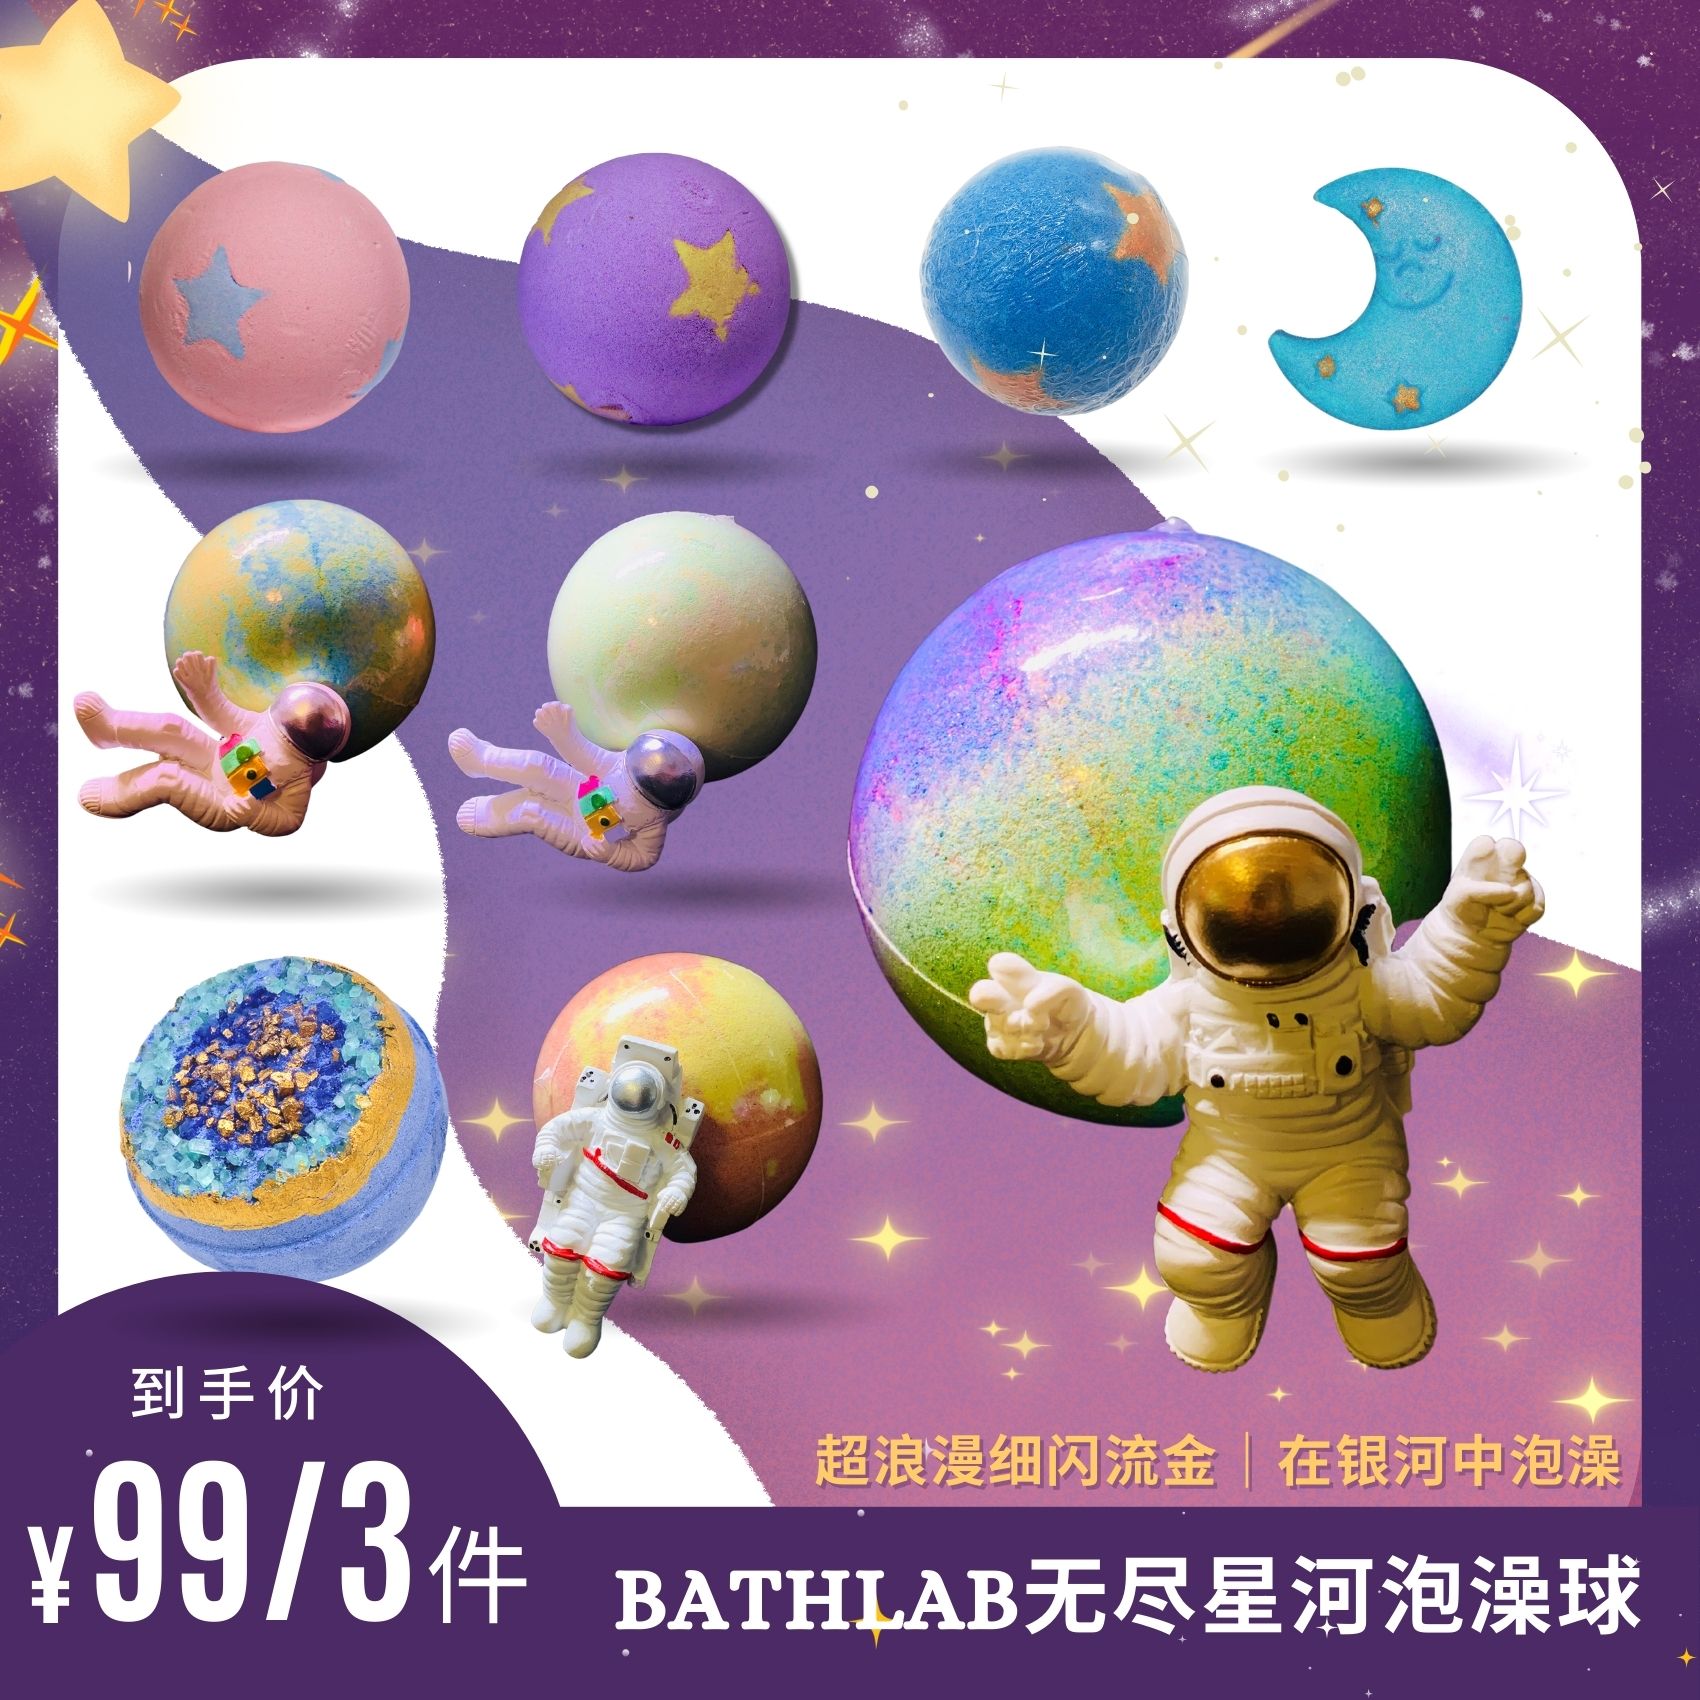 BathLab|无尽星河浴缸成人泡澡球盲盒儿童彩虹泡泡浴球宝宝带玩具